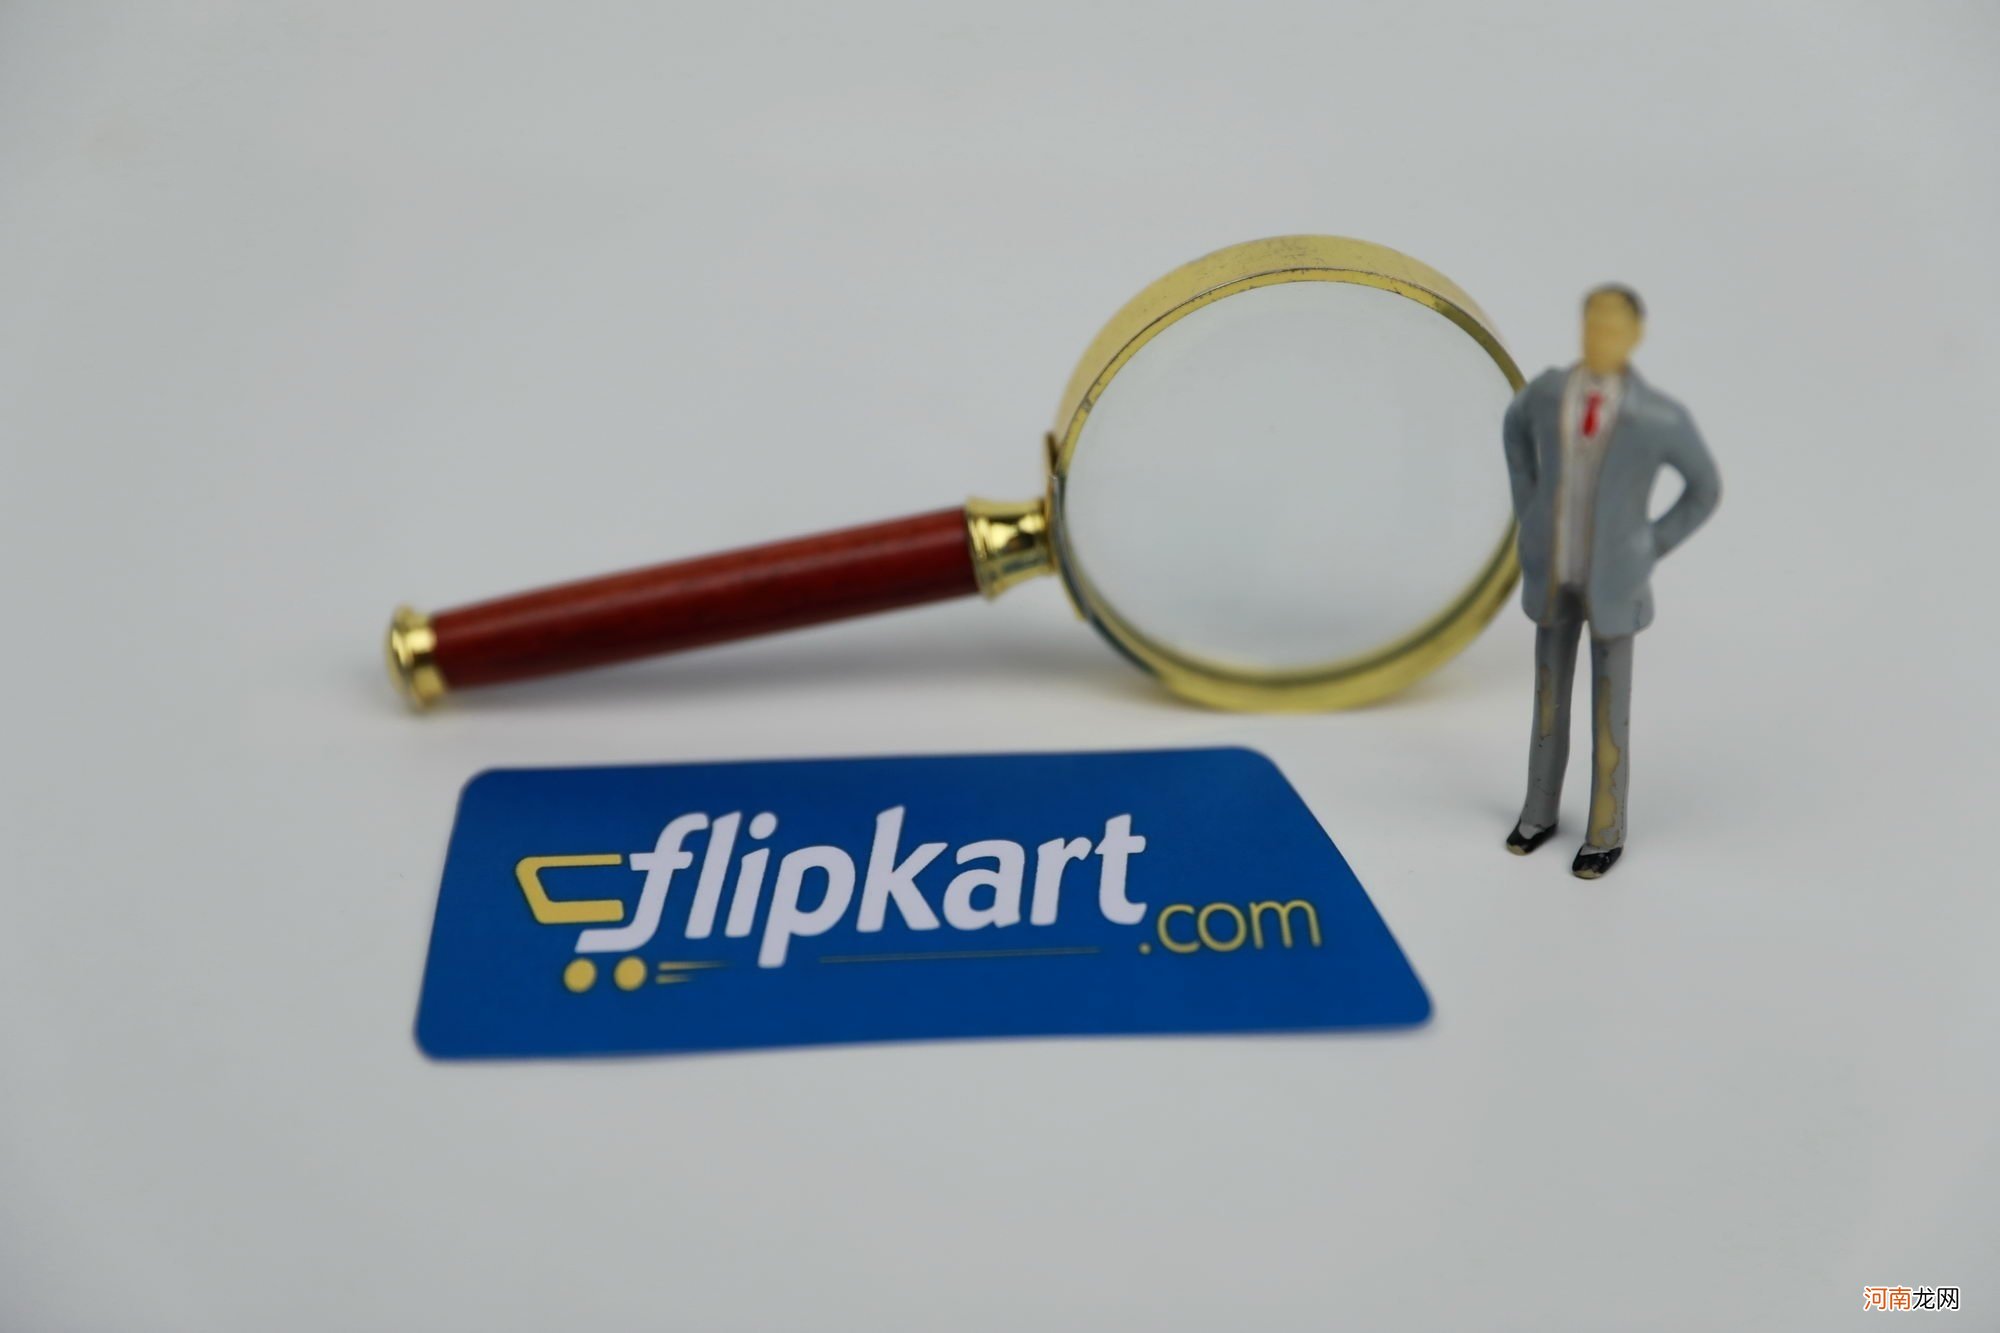 沃尔玛旗下Flipkart推出“Flipkart Xtra”平台